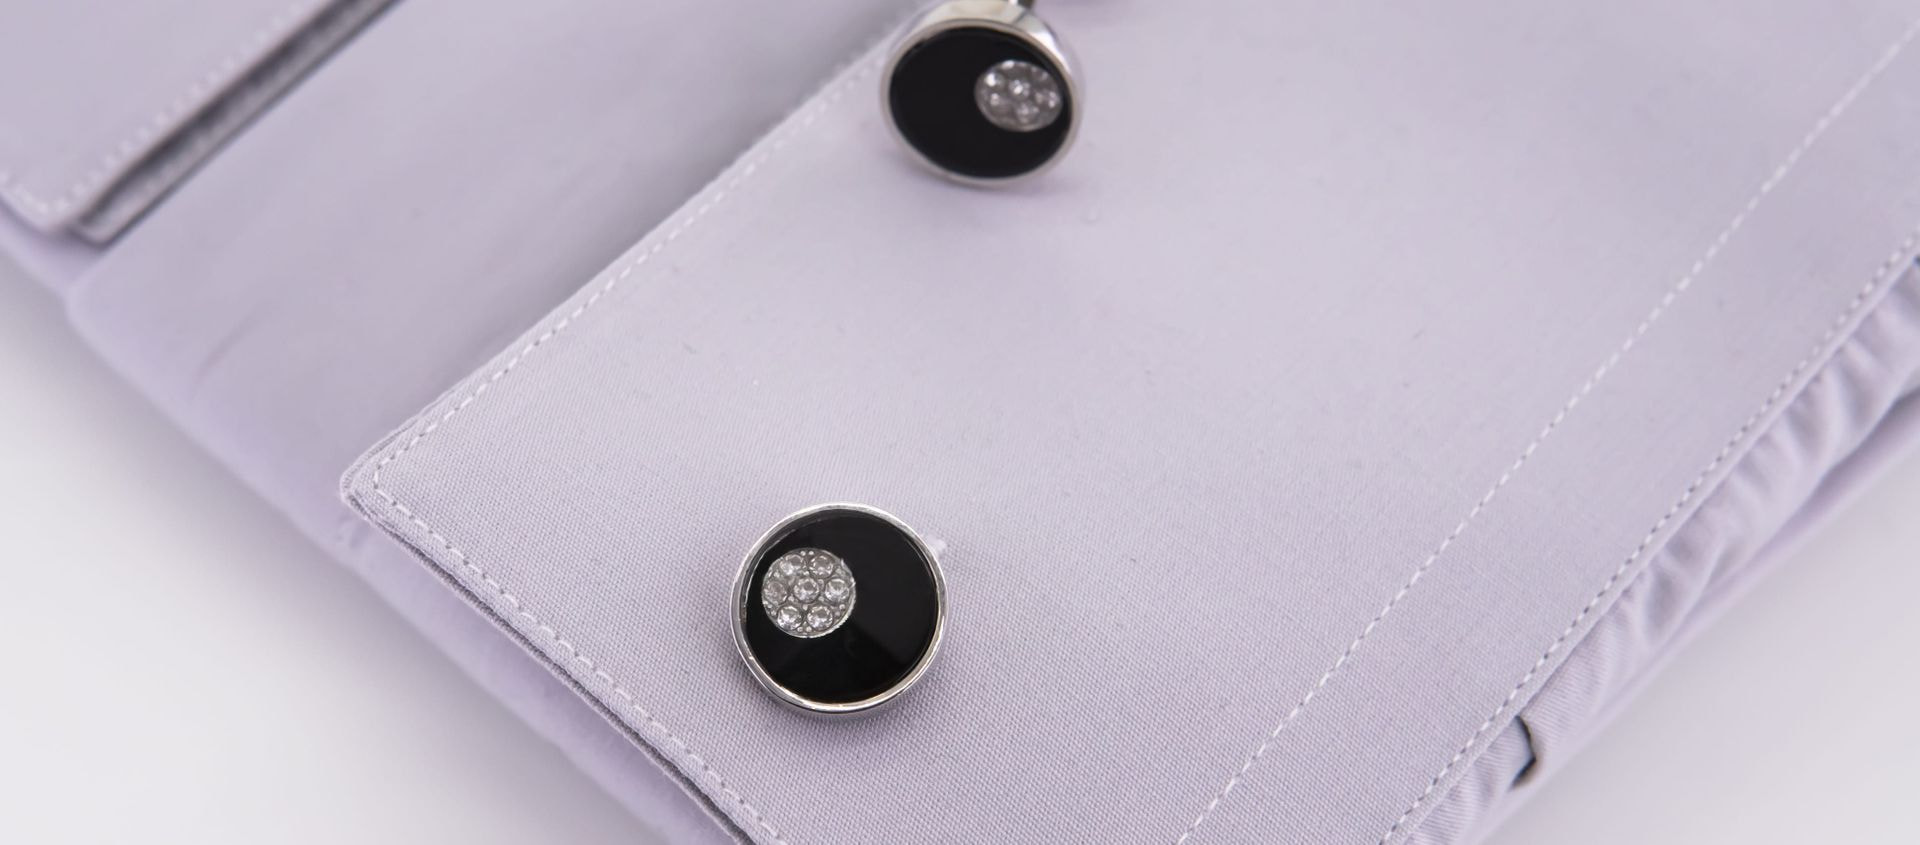 Round black cufflinks with glitter